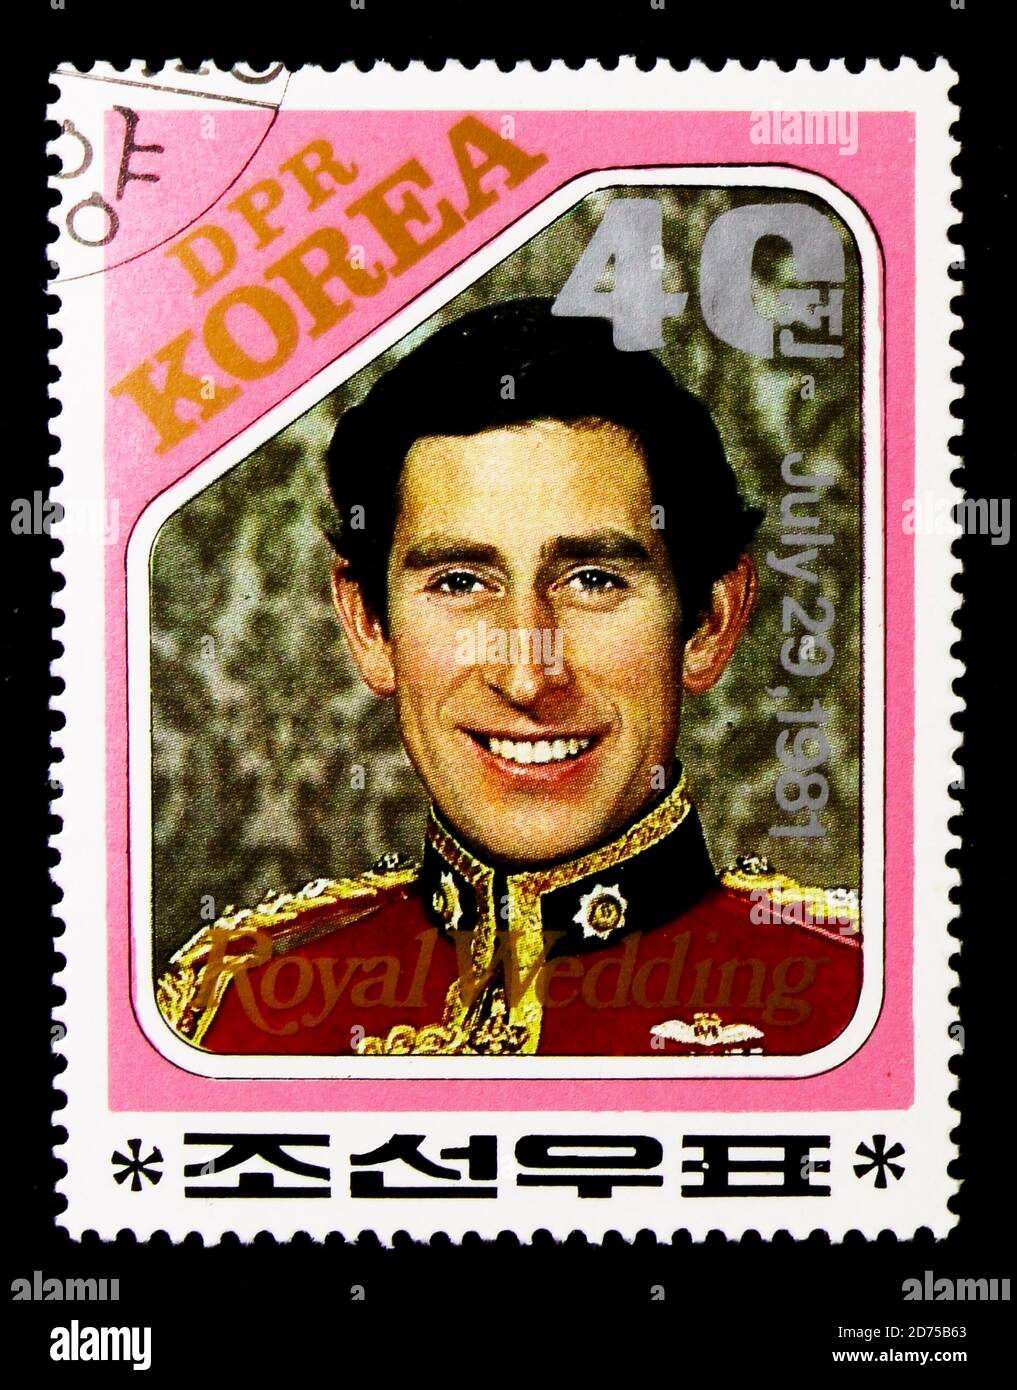 MOSCOU, RUSSIE - 25 NOVEMBRE 2017 : un timbre imprimé en république populaire démocratique de Corée montre le Prince Charles, mariage royal du Prince Charles et Banque D'Images